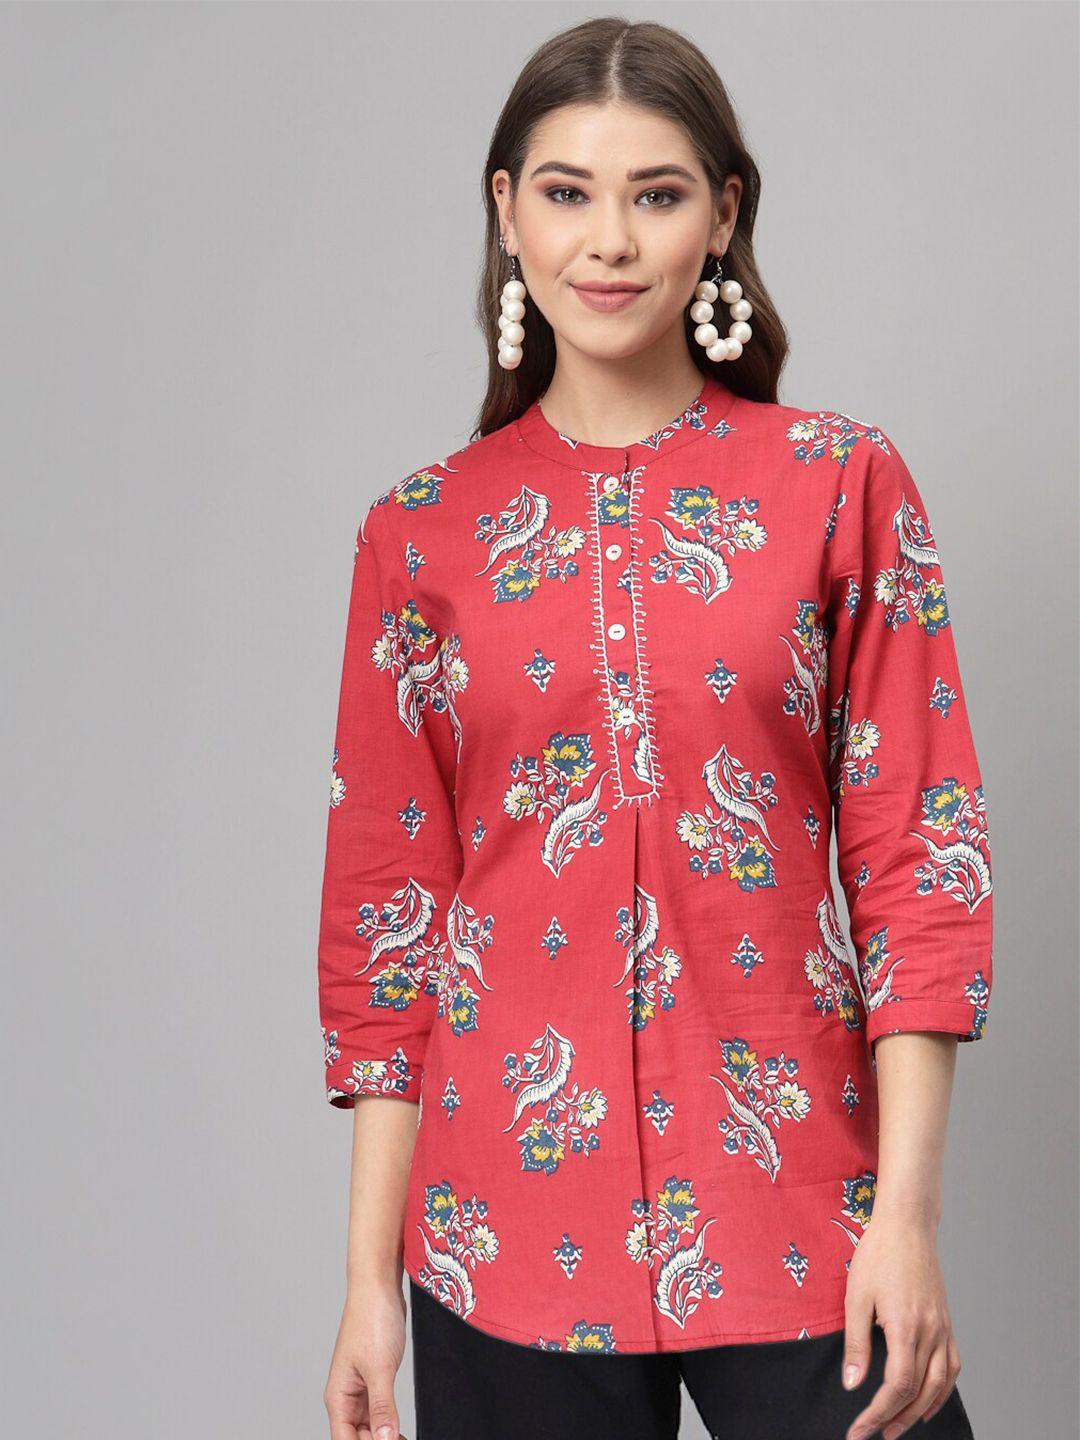 qomn red floral print mandarin collar shirt style top